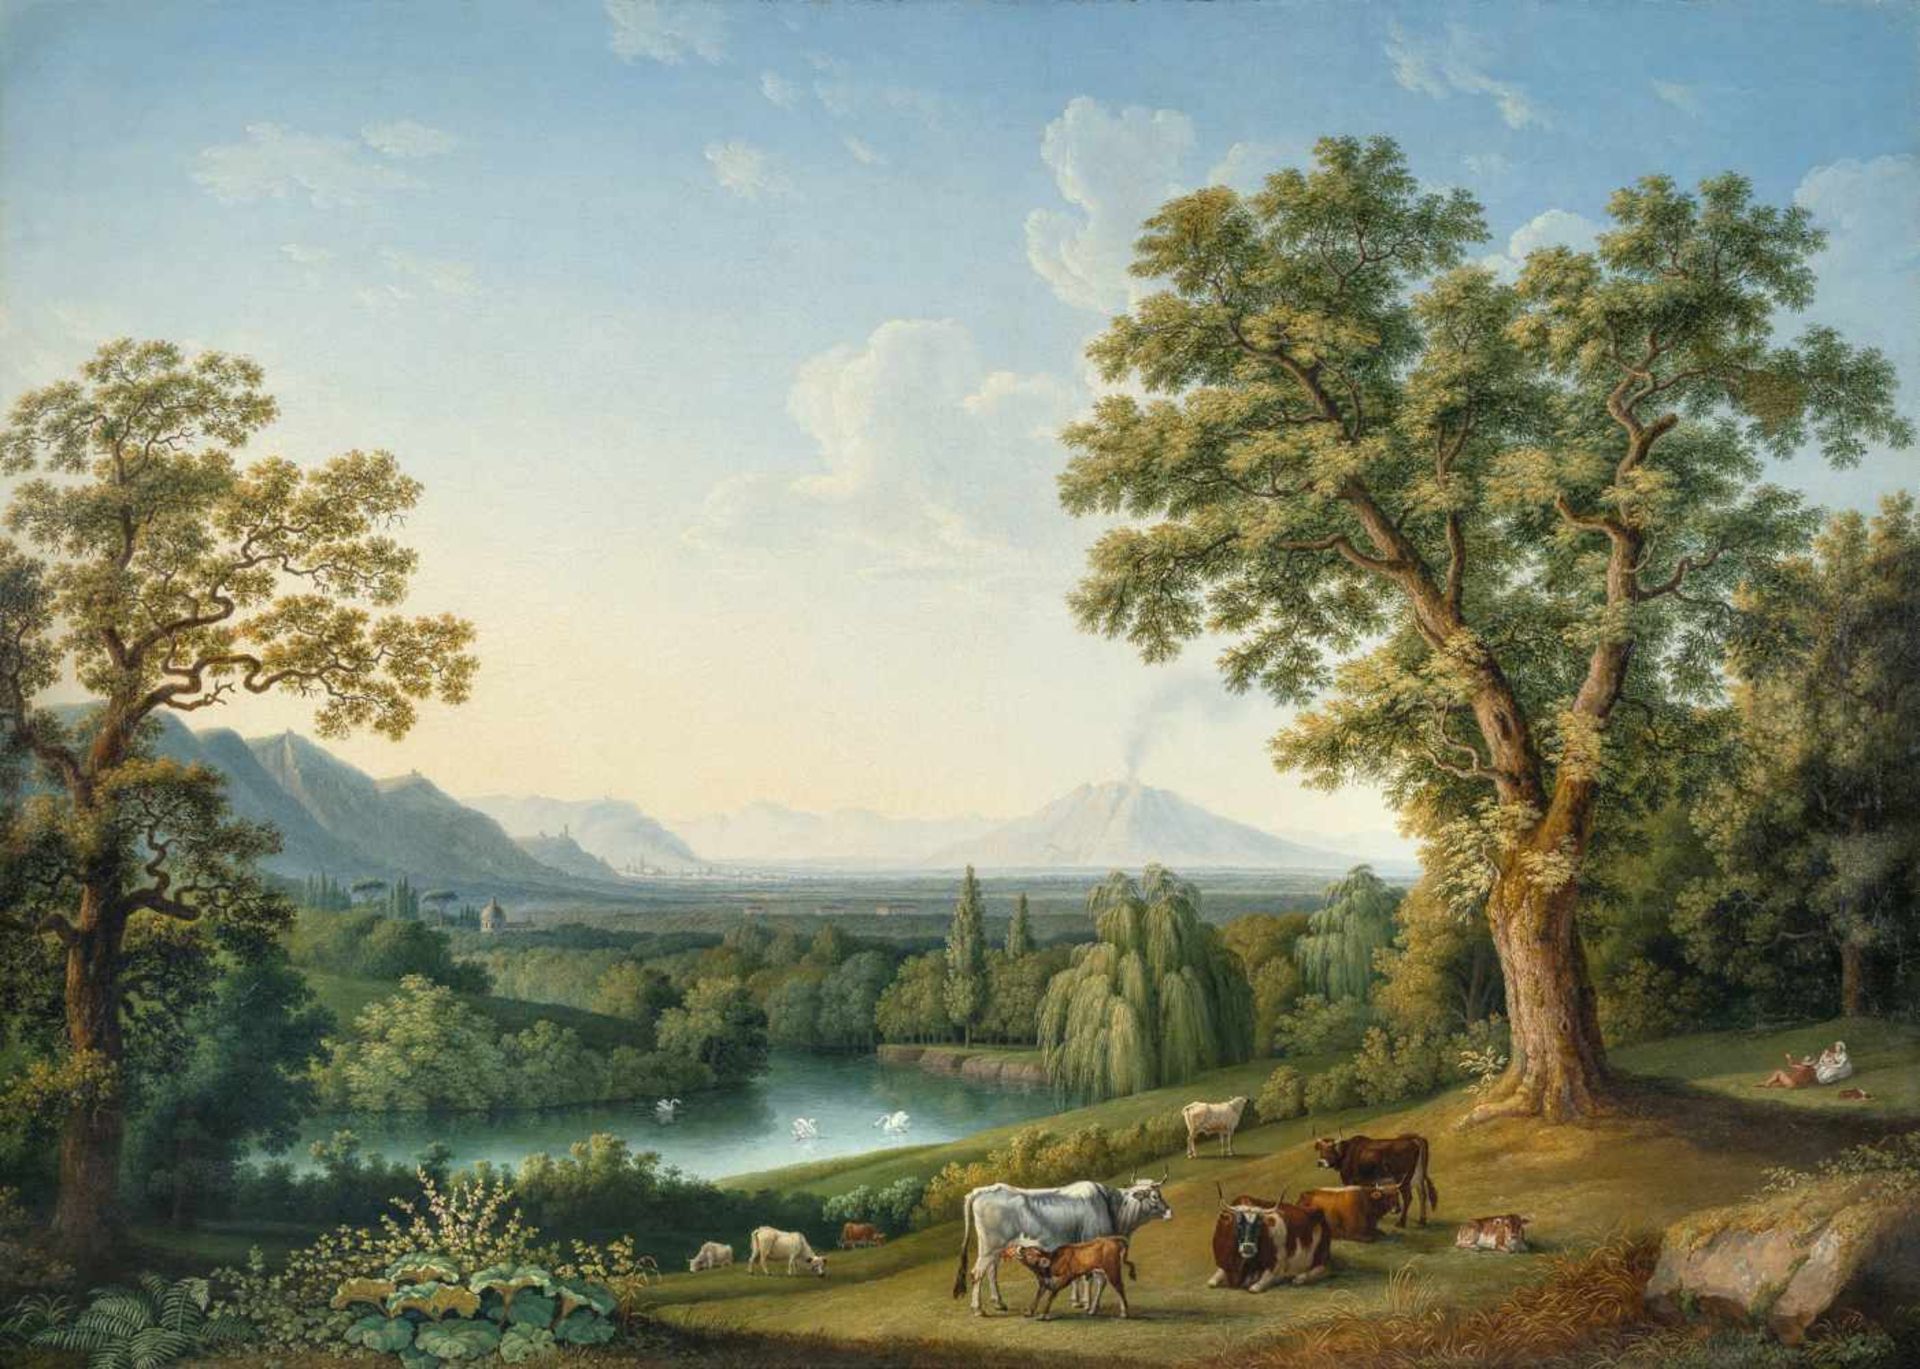 Jacob Philipp HackertIm Englischen Garten von CasertaÖl auf Leinwand, doubliert. 1800. 118 x 167 cm.